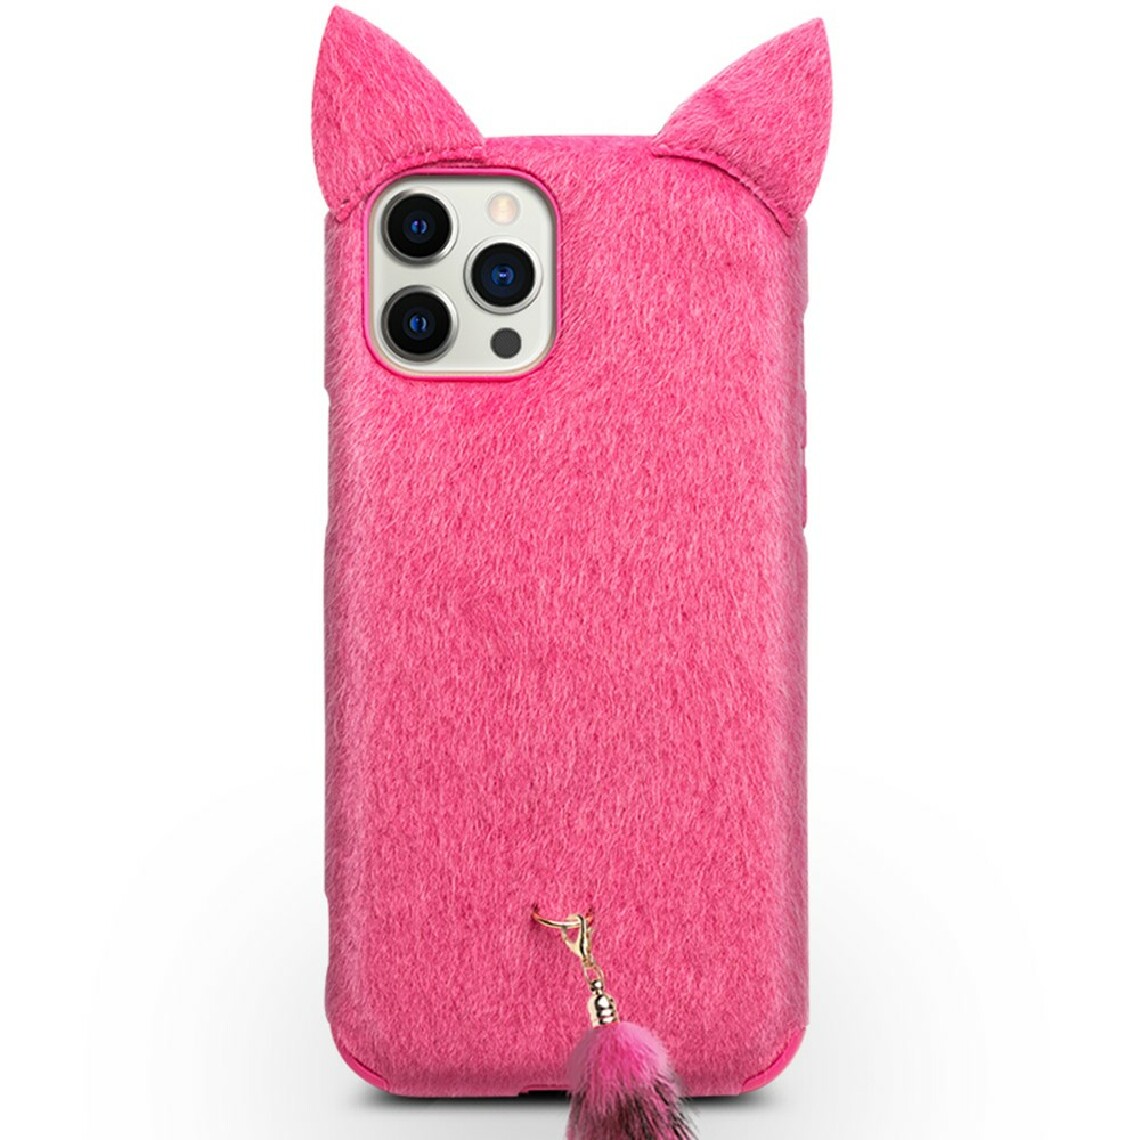 Qialino - Coque en TPU décor enduit de peluche avec une courroie de queue et d'oreilles de chat en peluche rose pour votre Apple iPhone 12 Pro Max - Coque, étui smartphone